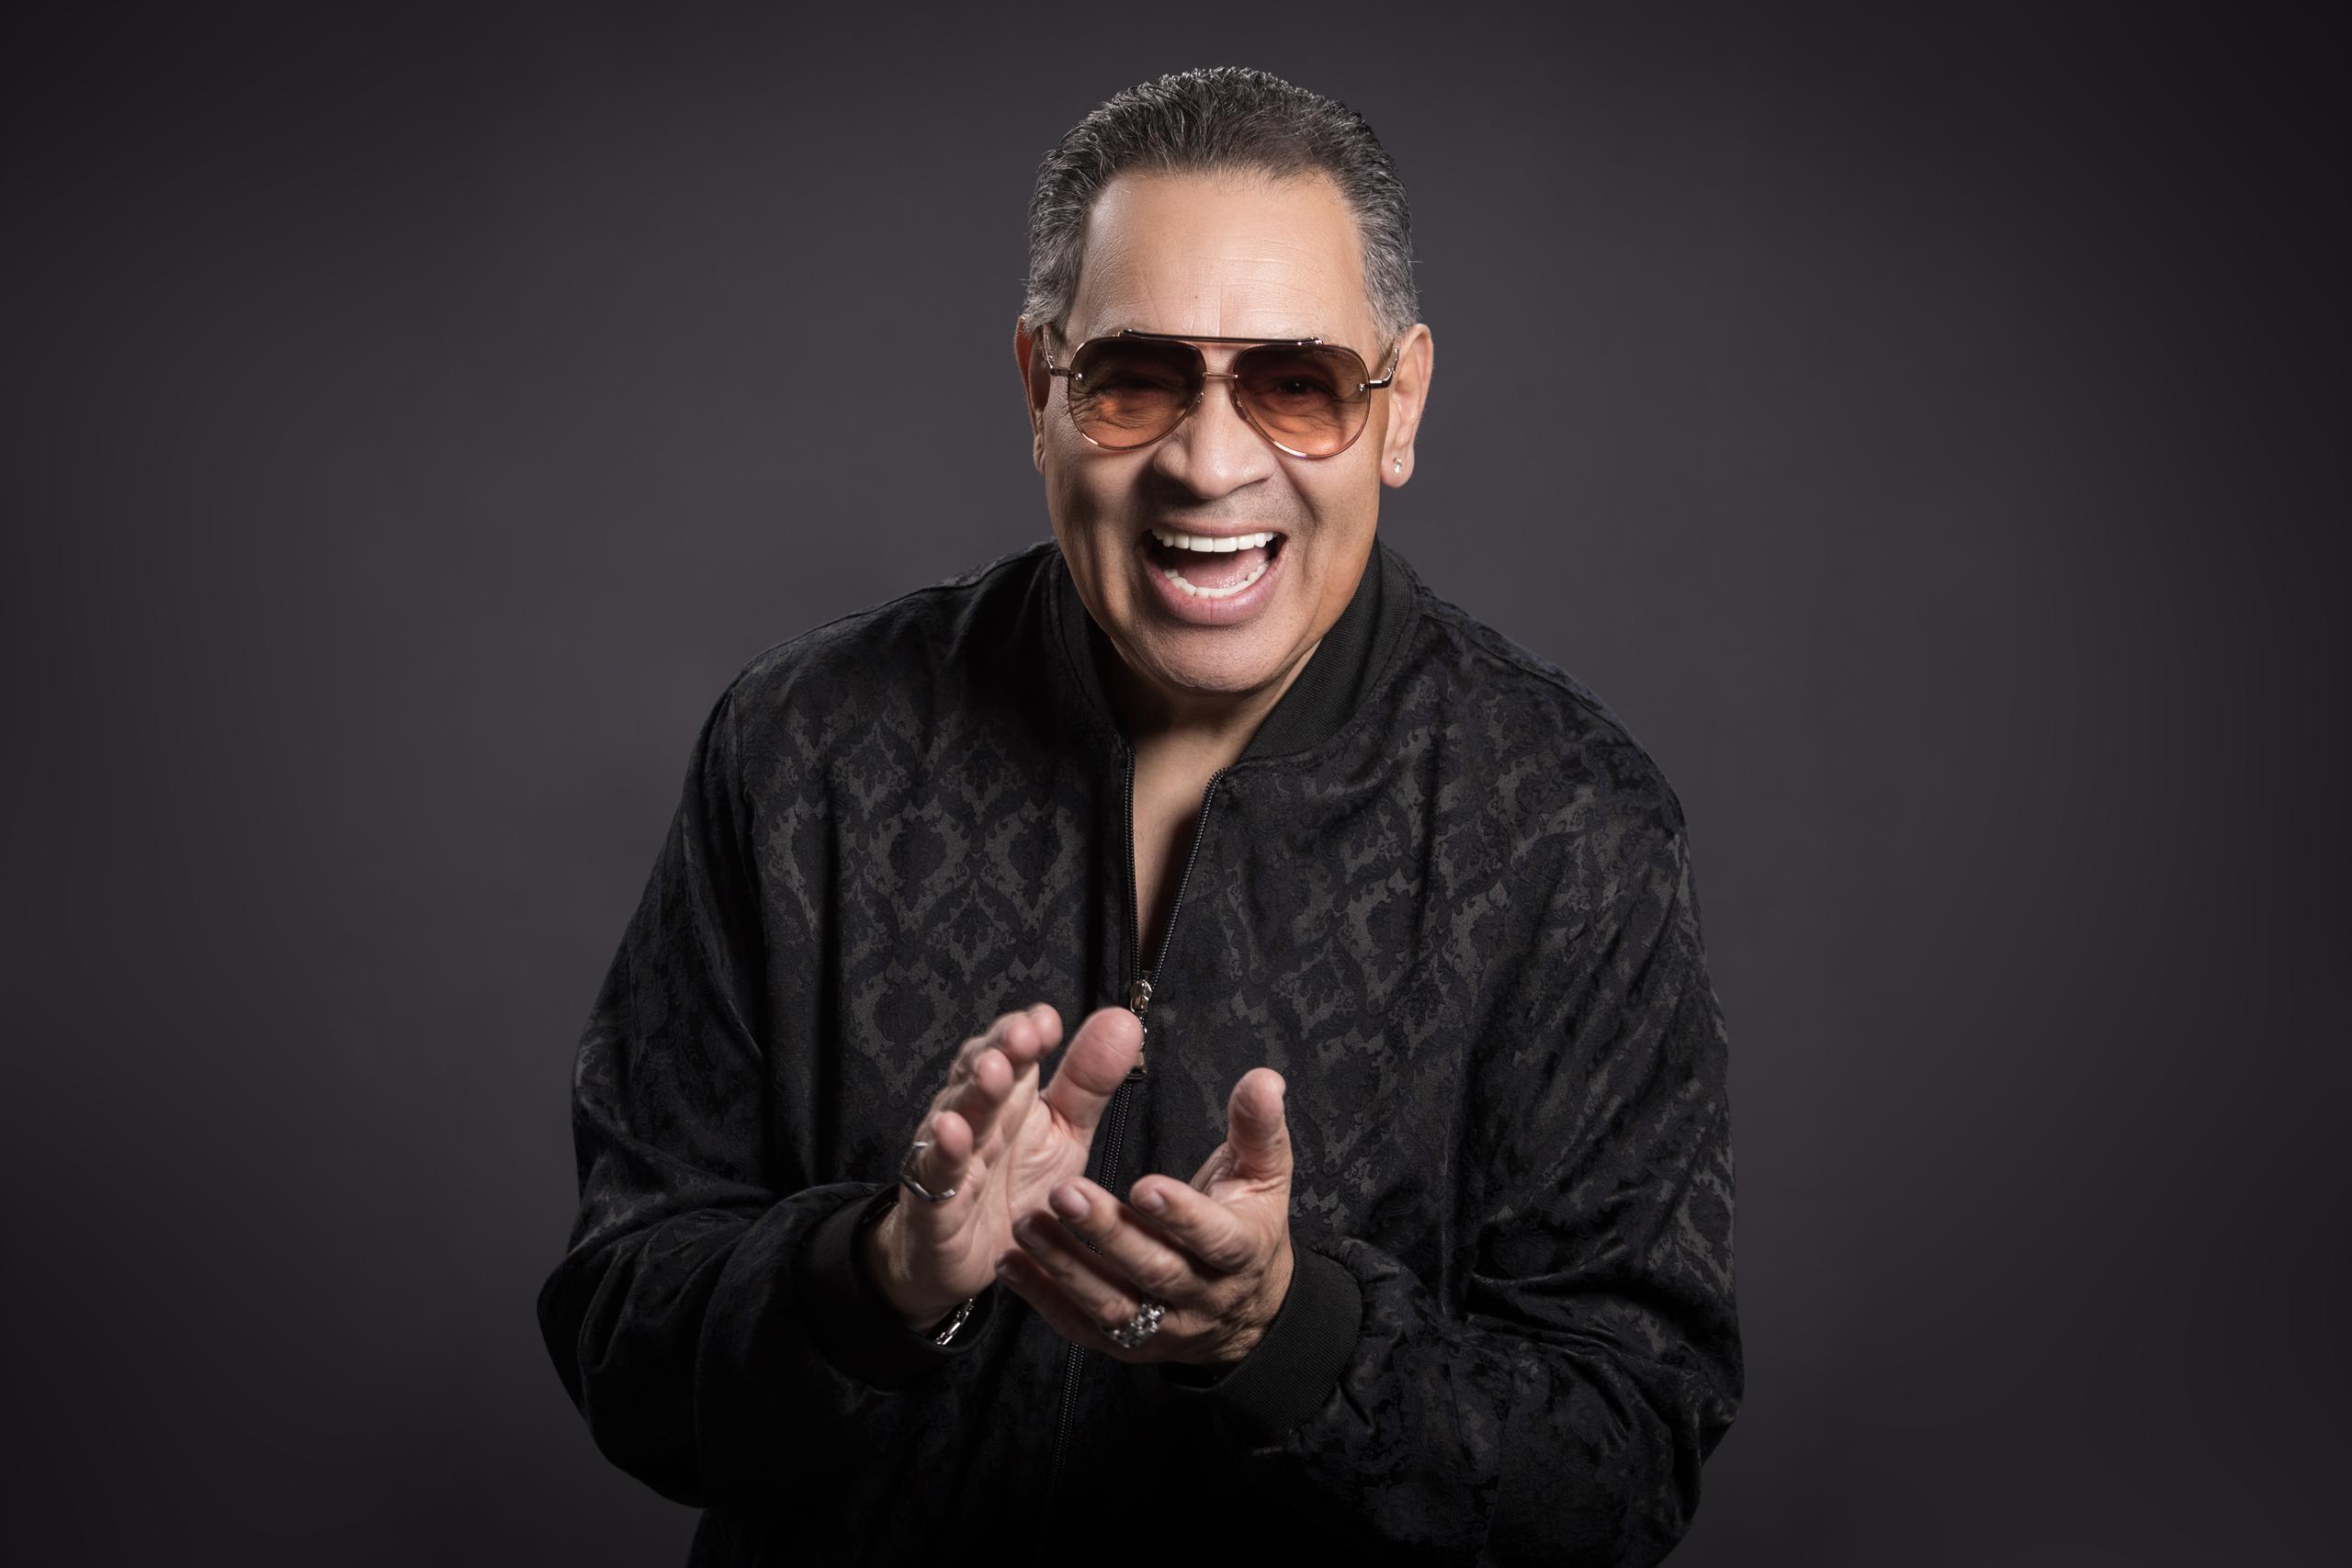 A un año de celebrar cinco décadas en la música, Tito Nieves está sólido en su determinación de continuar provocando emociones a través de su voz.